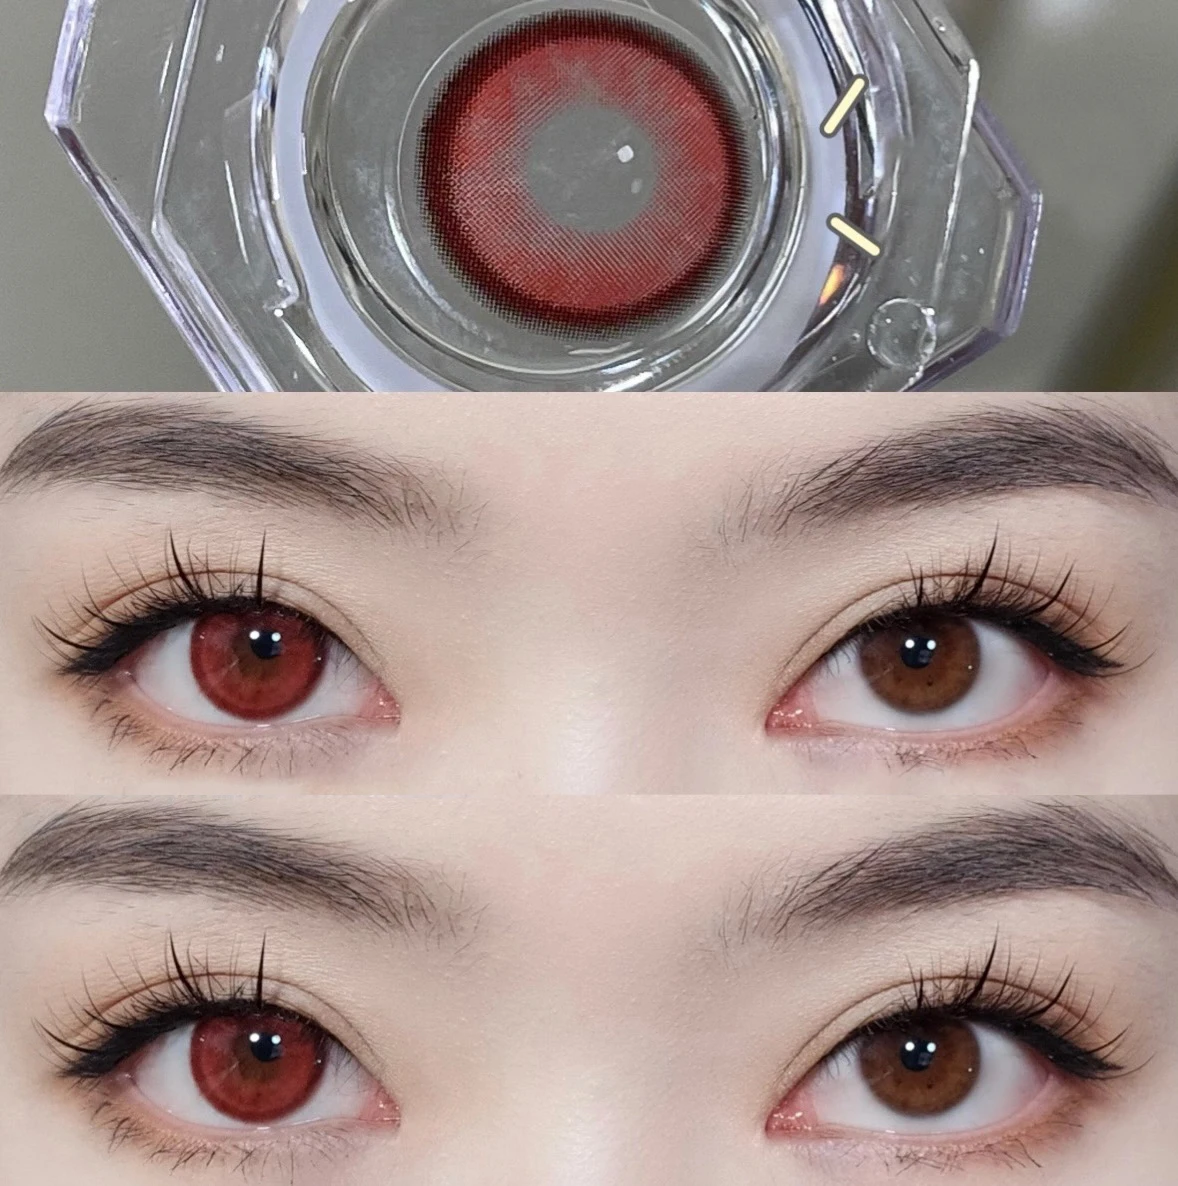 Bio-essence 1 Pair Contact Lenses For Eyes Anime Lenses Red Eye Lenses  Vampire Halloween Twilight Eyedrop 10ml Fashion Lenses - Color Contact  Lenses - AliExpress